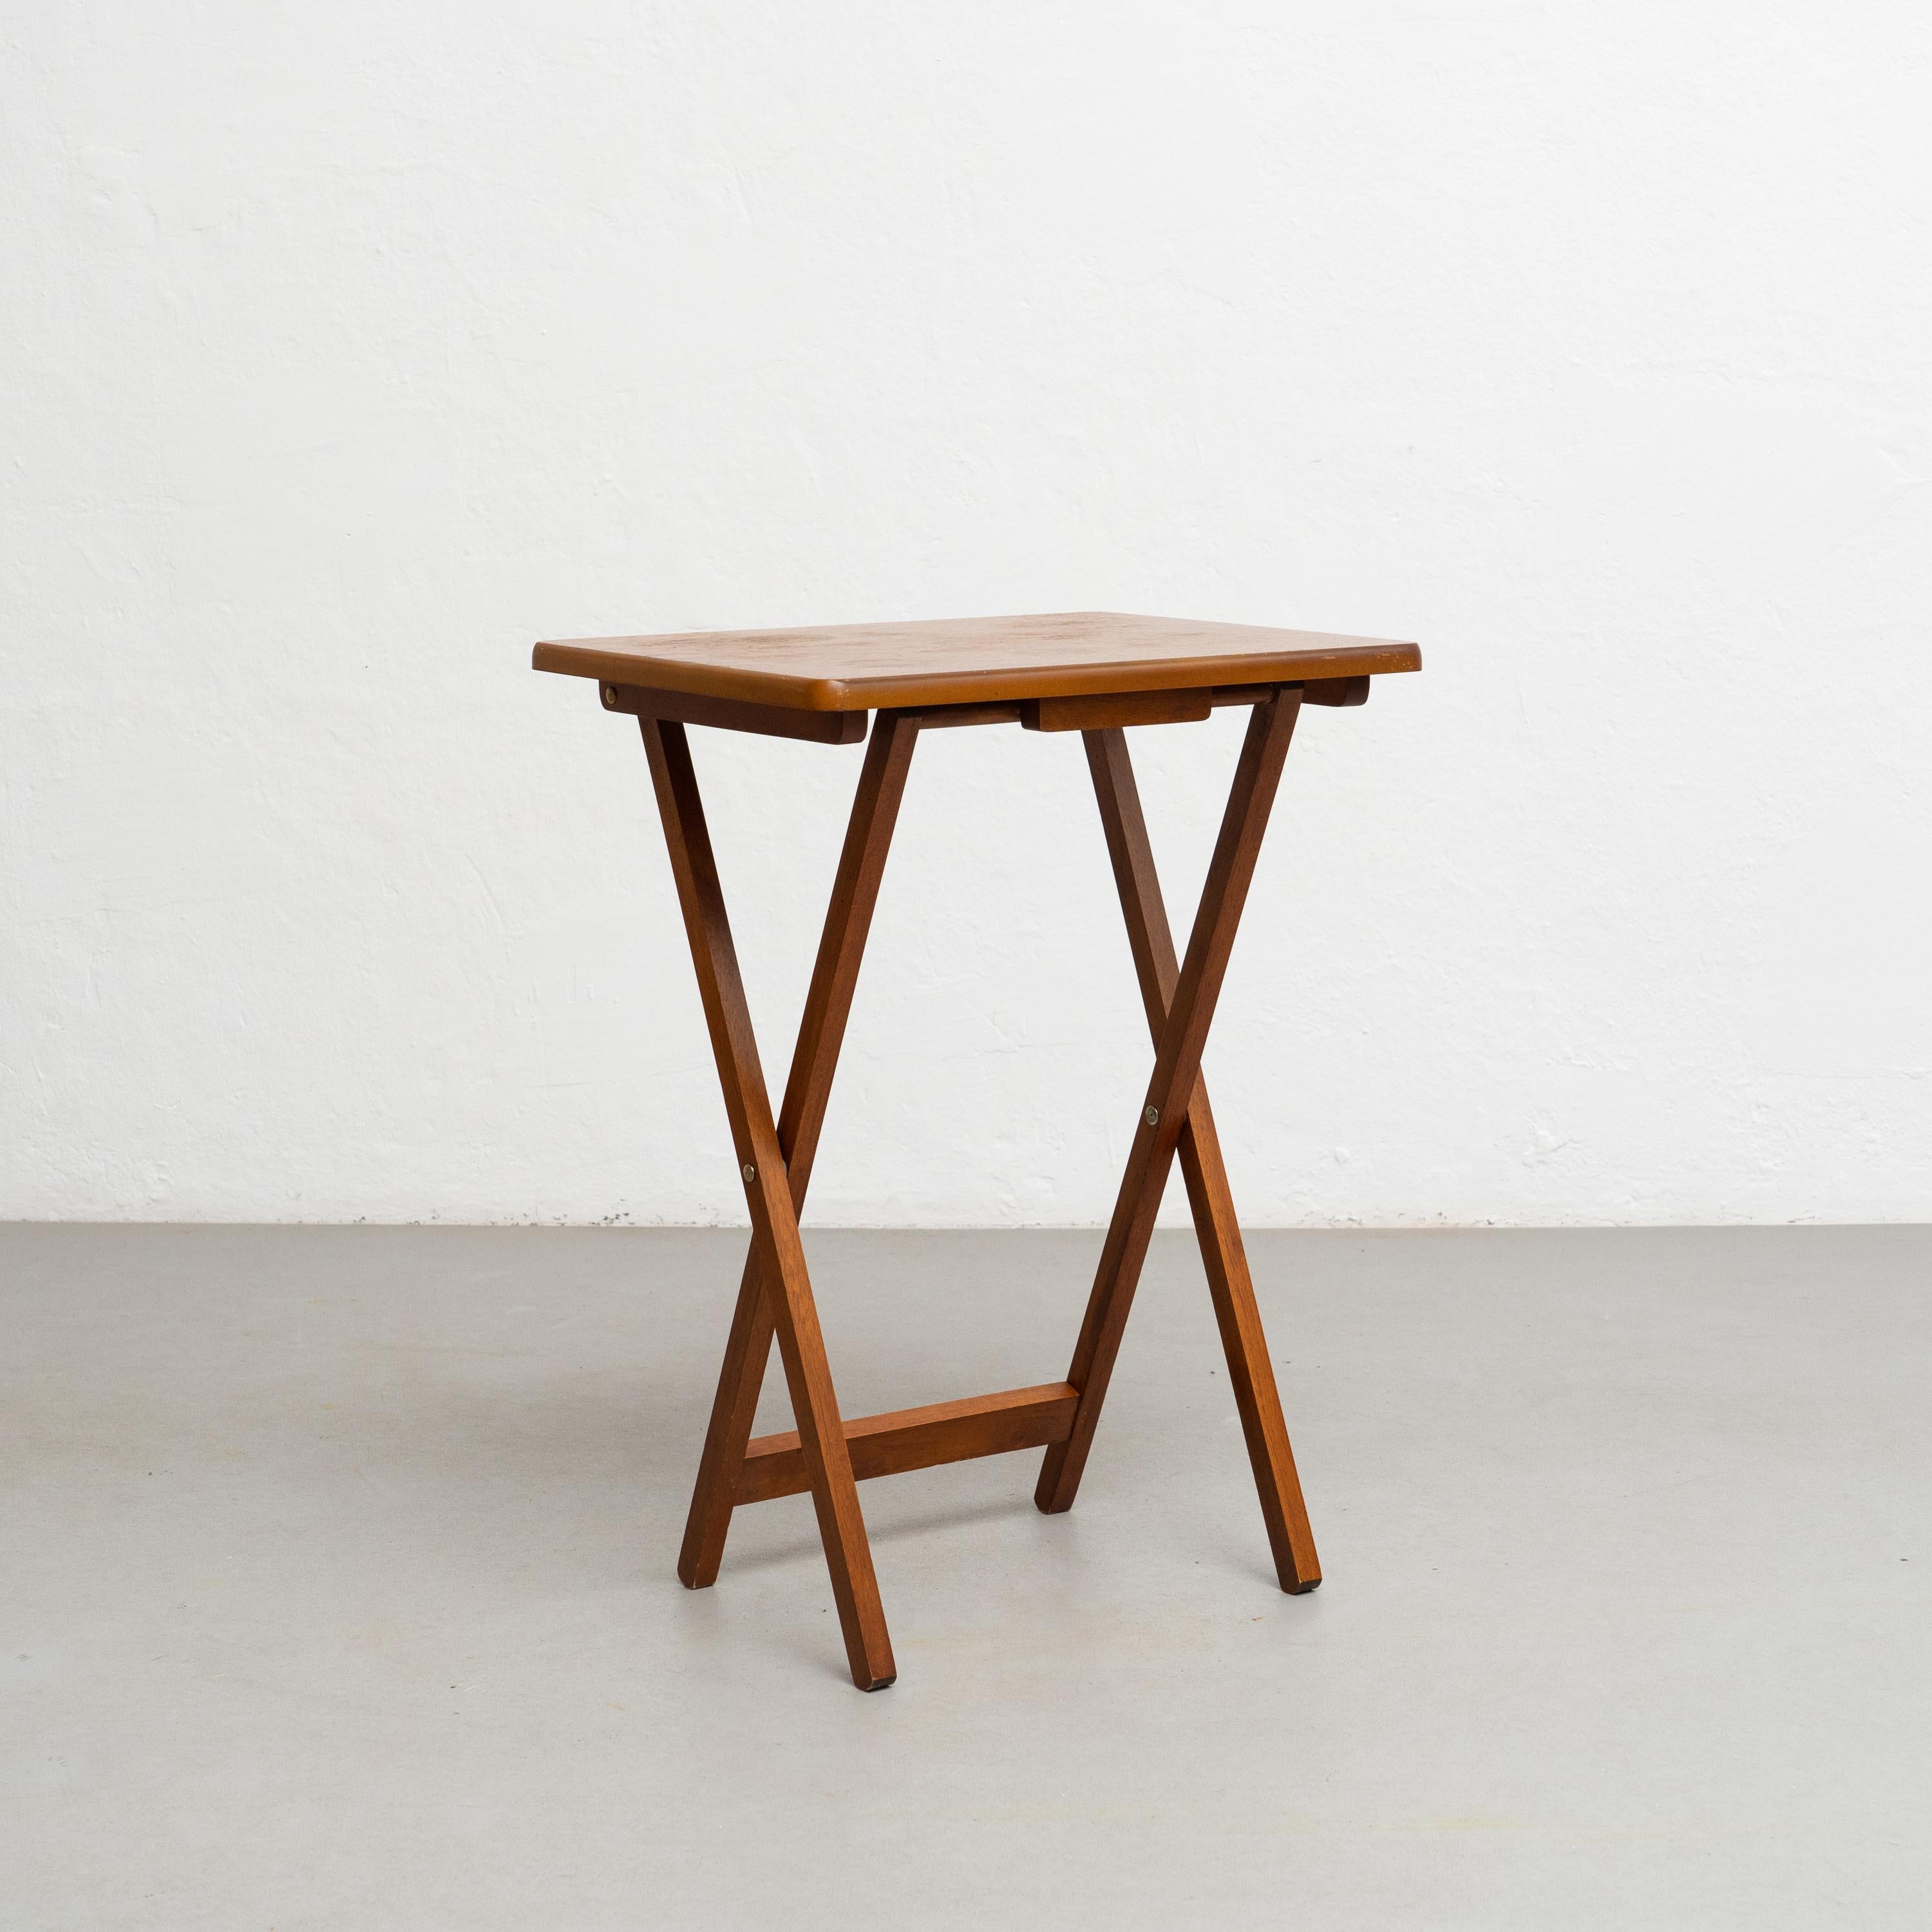 Klappbarer Holztisch, um 1960.

Von einem unbekannten Kunsthandwerker in Spanien, um 1960.

In gutem Originalzustand mit geringen alters- und gebrauchsbedingten Abnutzungserscheinungen, die eine schöne Patina erhalten haben.

MATERIALIEN:
Holz.